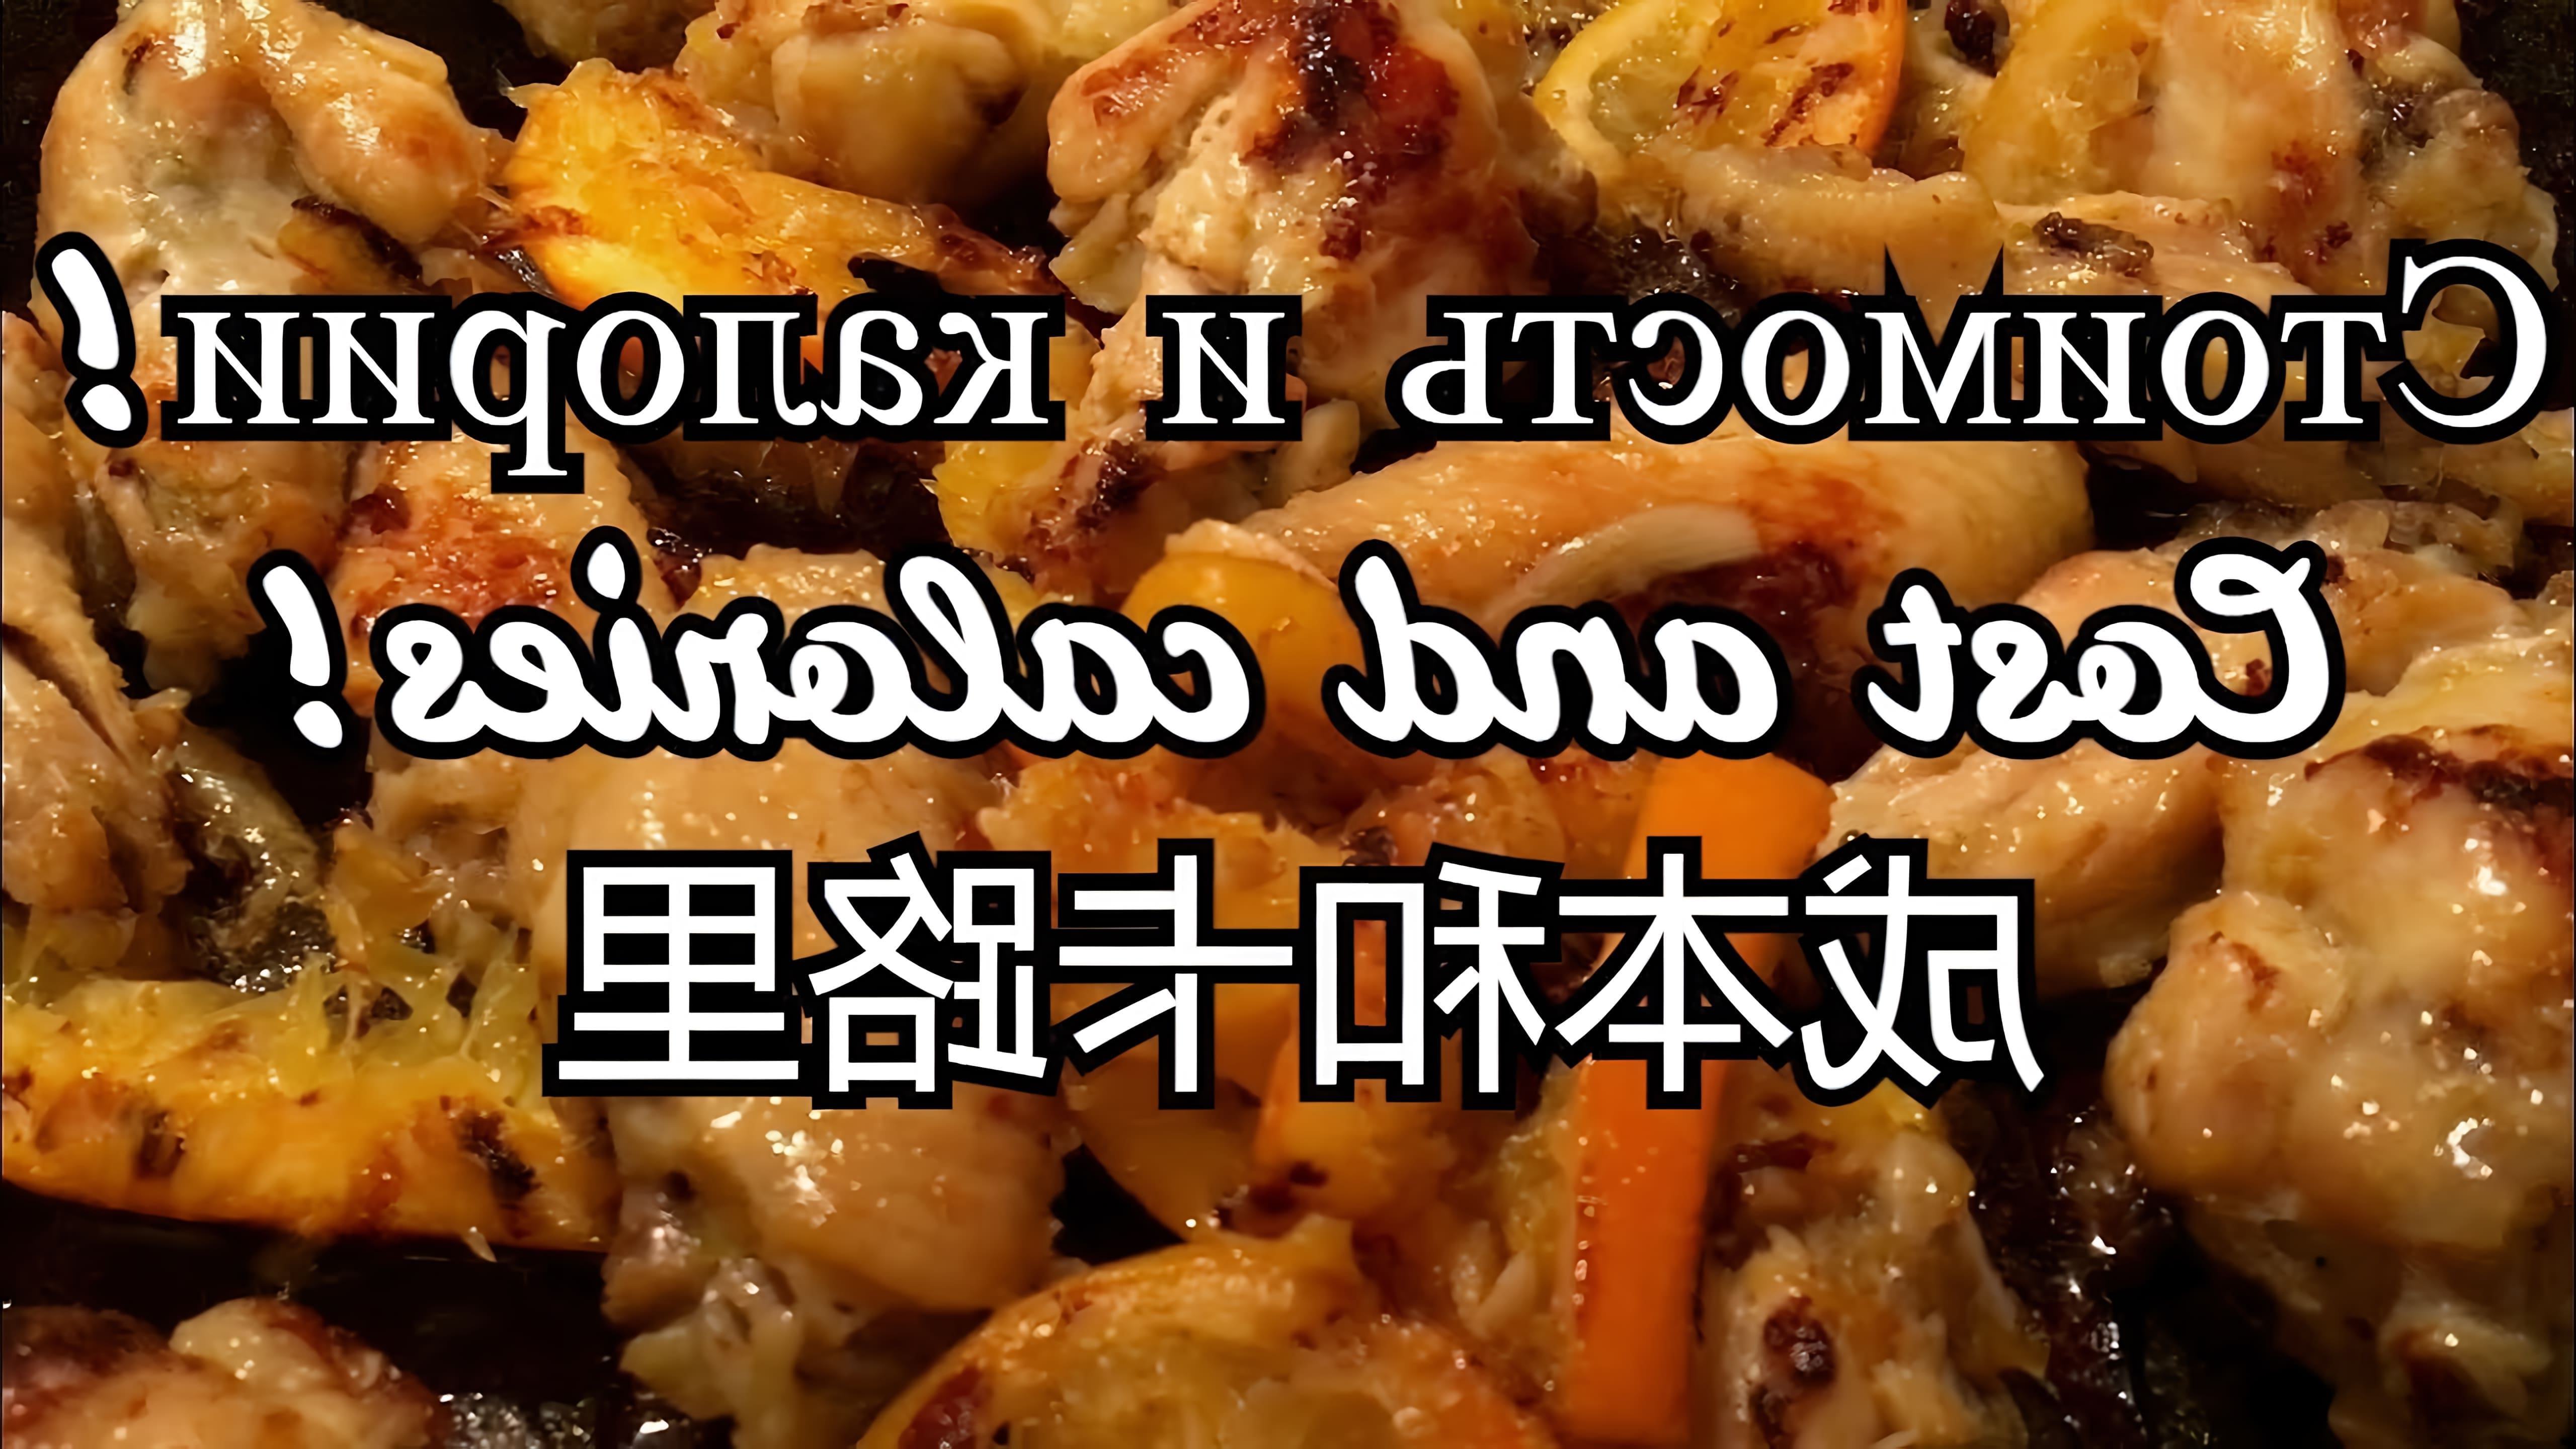 В этом видео-ролике будет показан процесс приготовления вкусного блюда - куриных крылышек на сковороде с карамелизованным луком